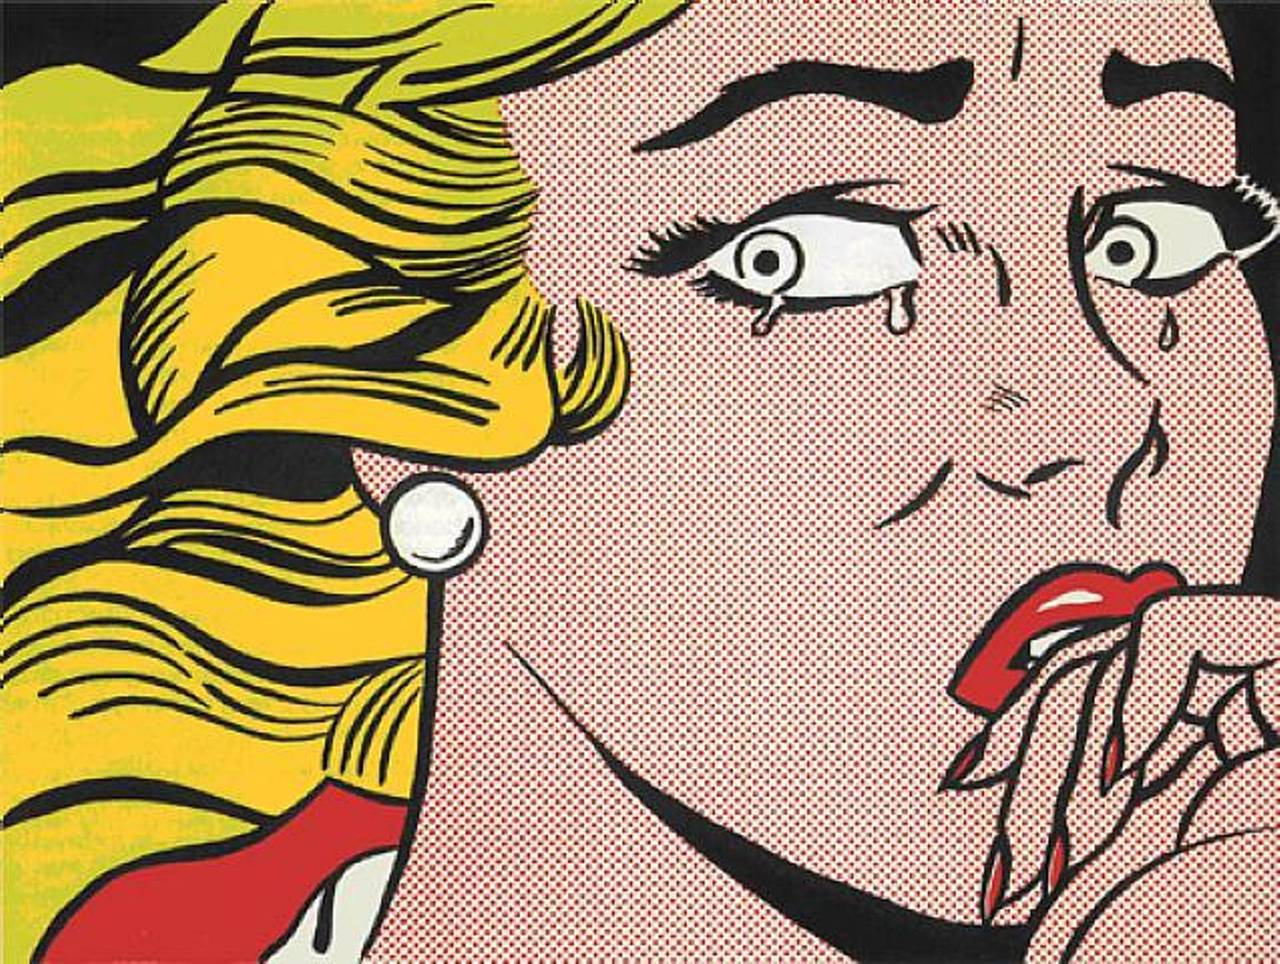 Crying Girl - Print by Roy Lichtenstein